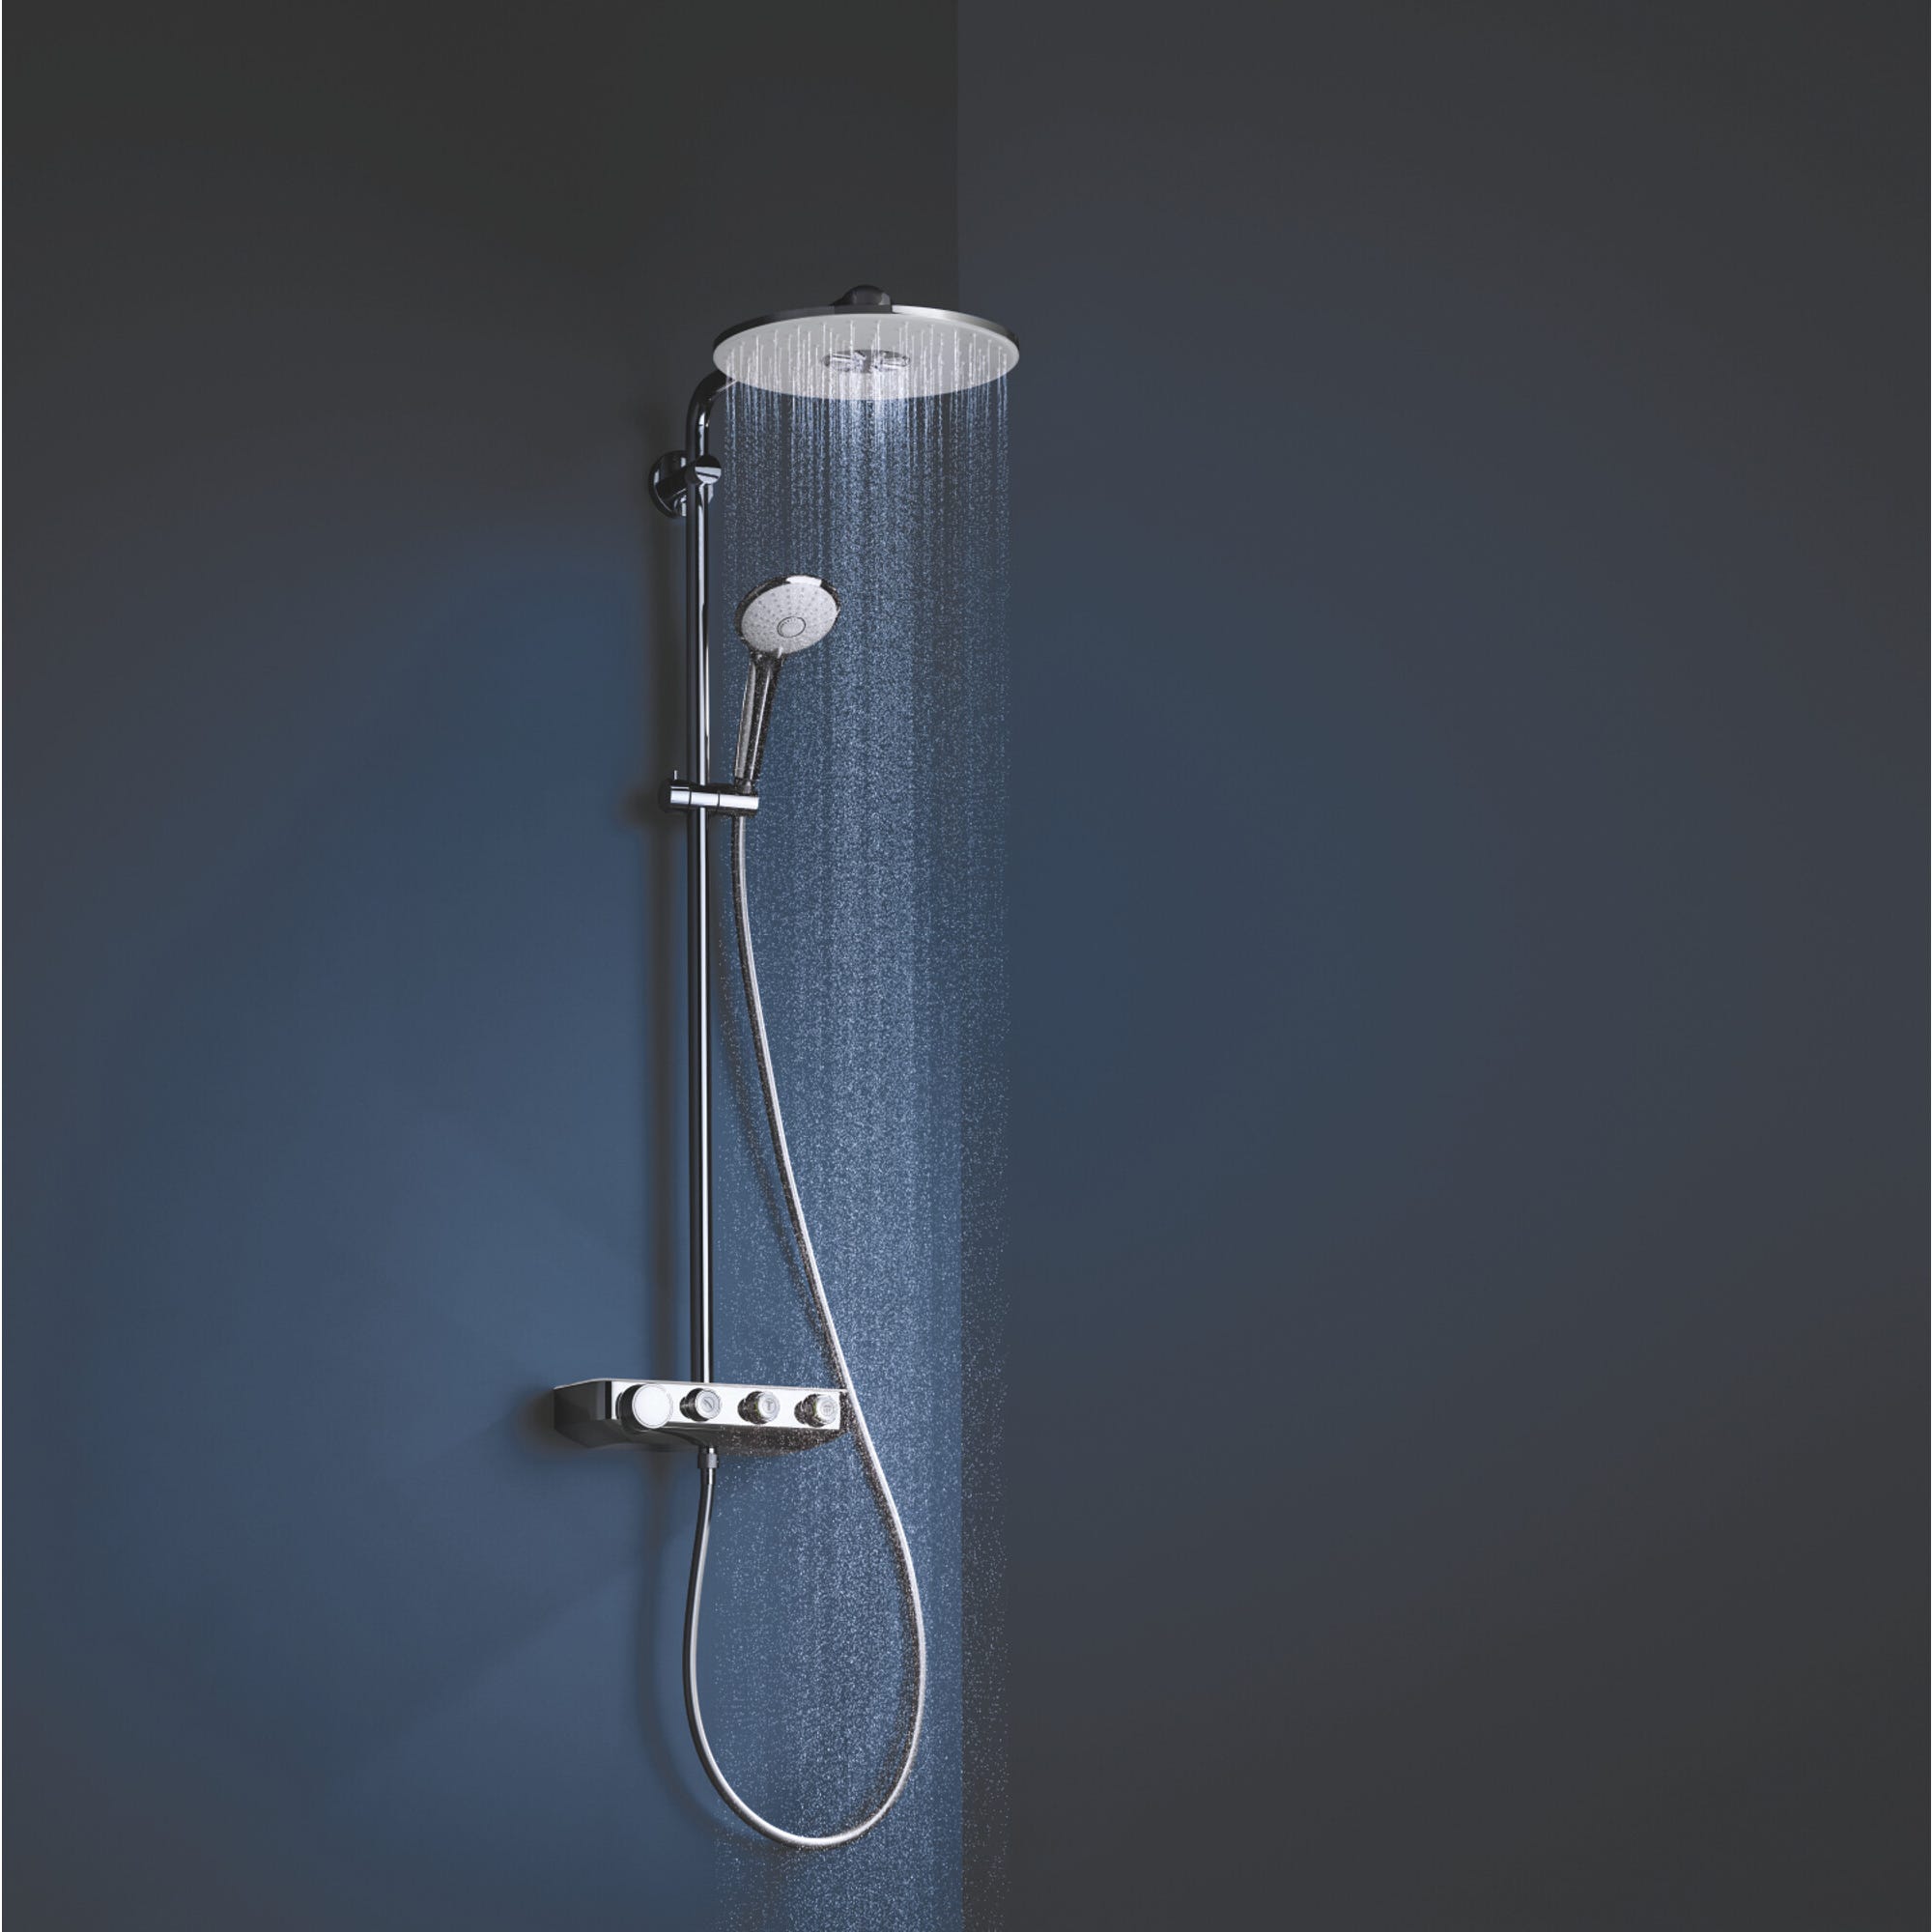 Colonne de douche avec mitigeur thermostatique blanc EUPHORIA SMARTCONTROL SYSTEM 310 DUO - 26507LS0 GROHE 2